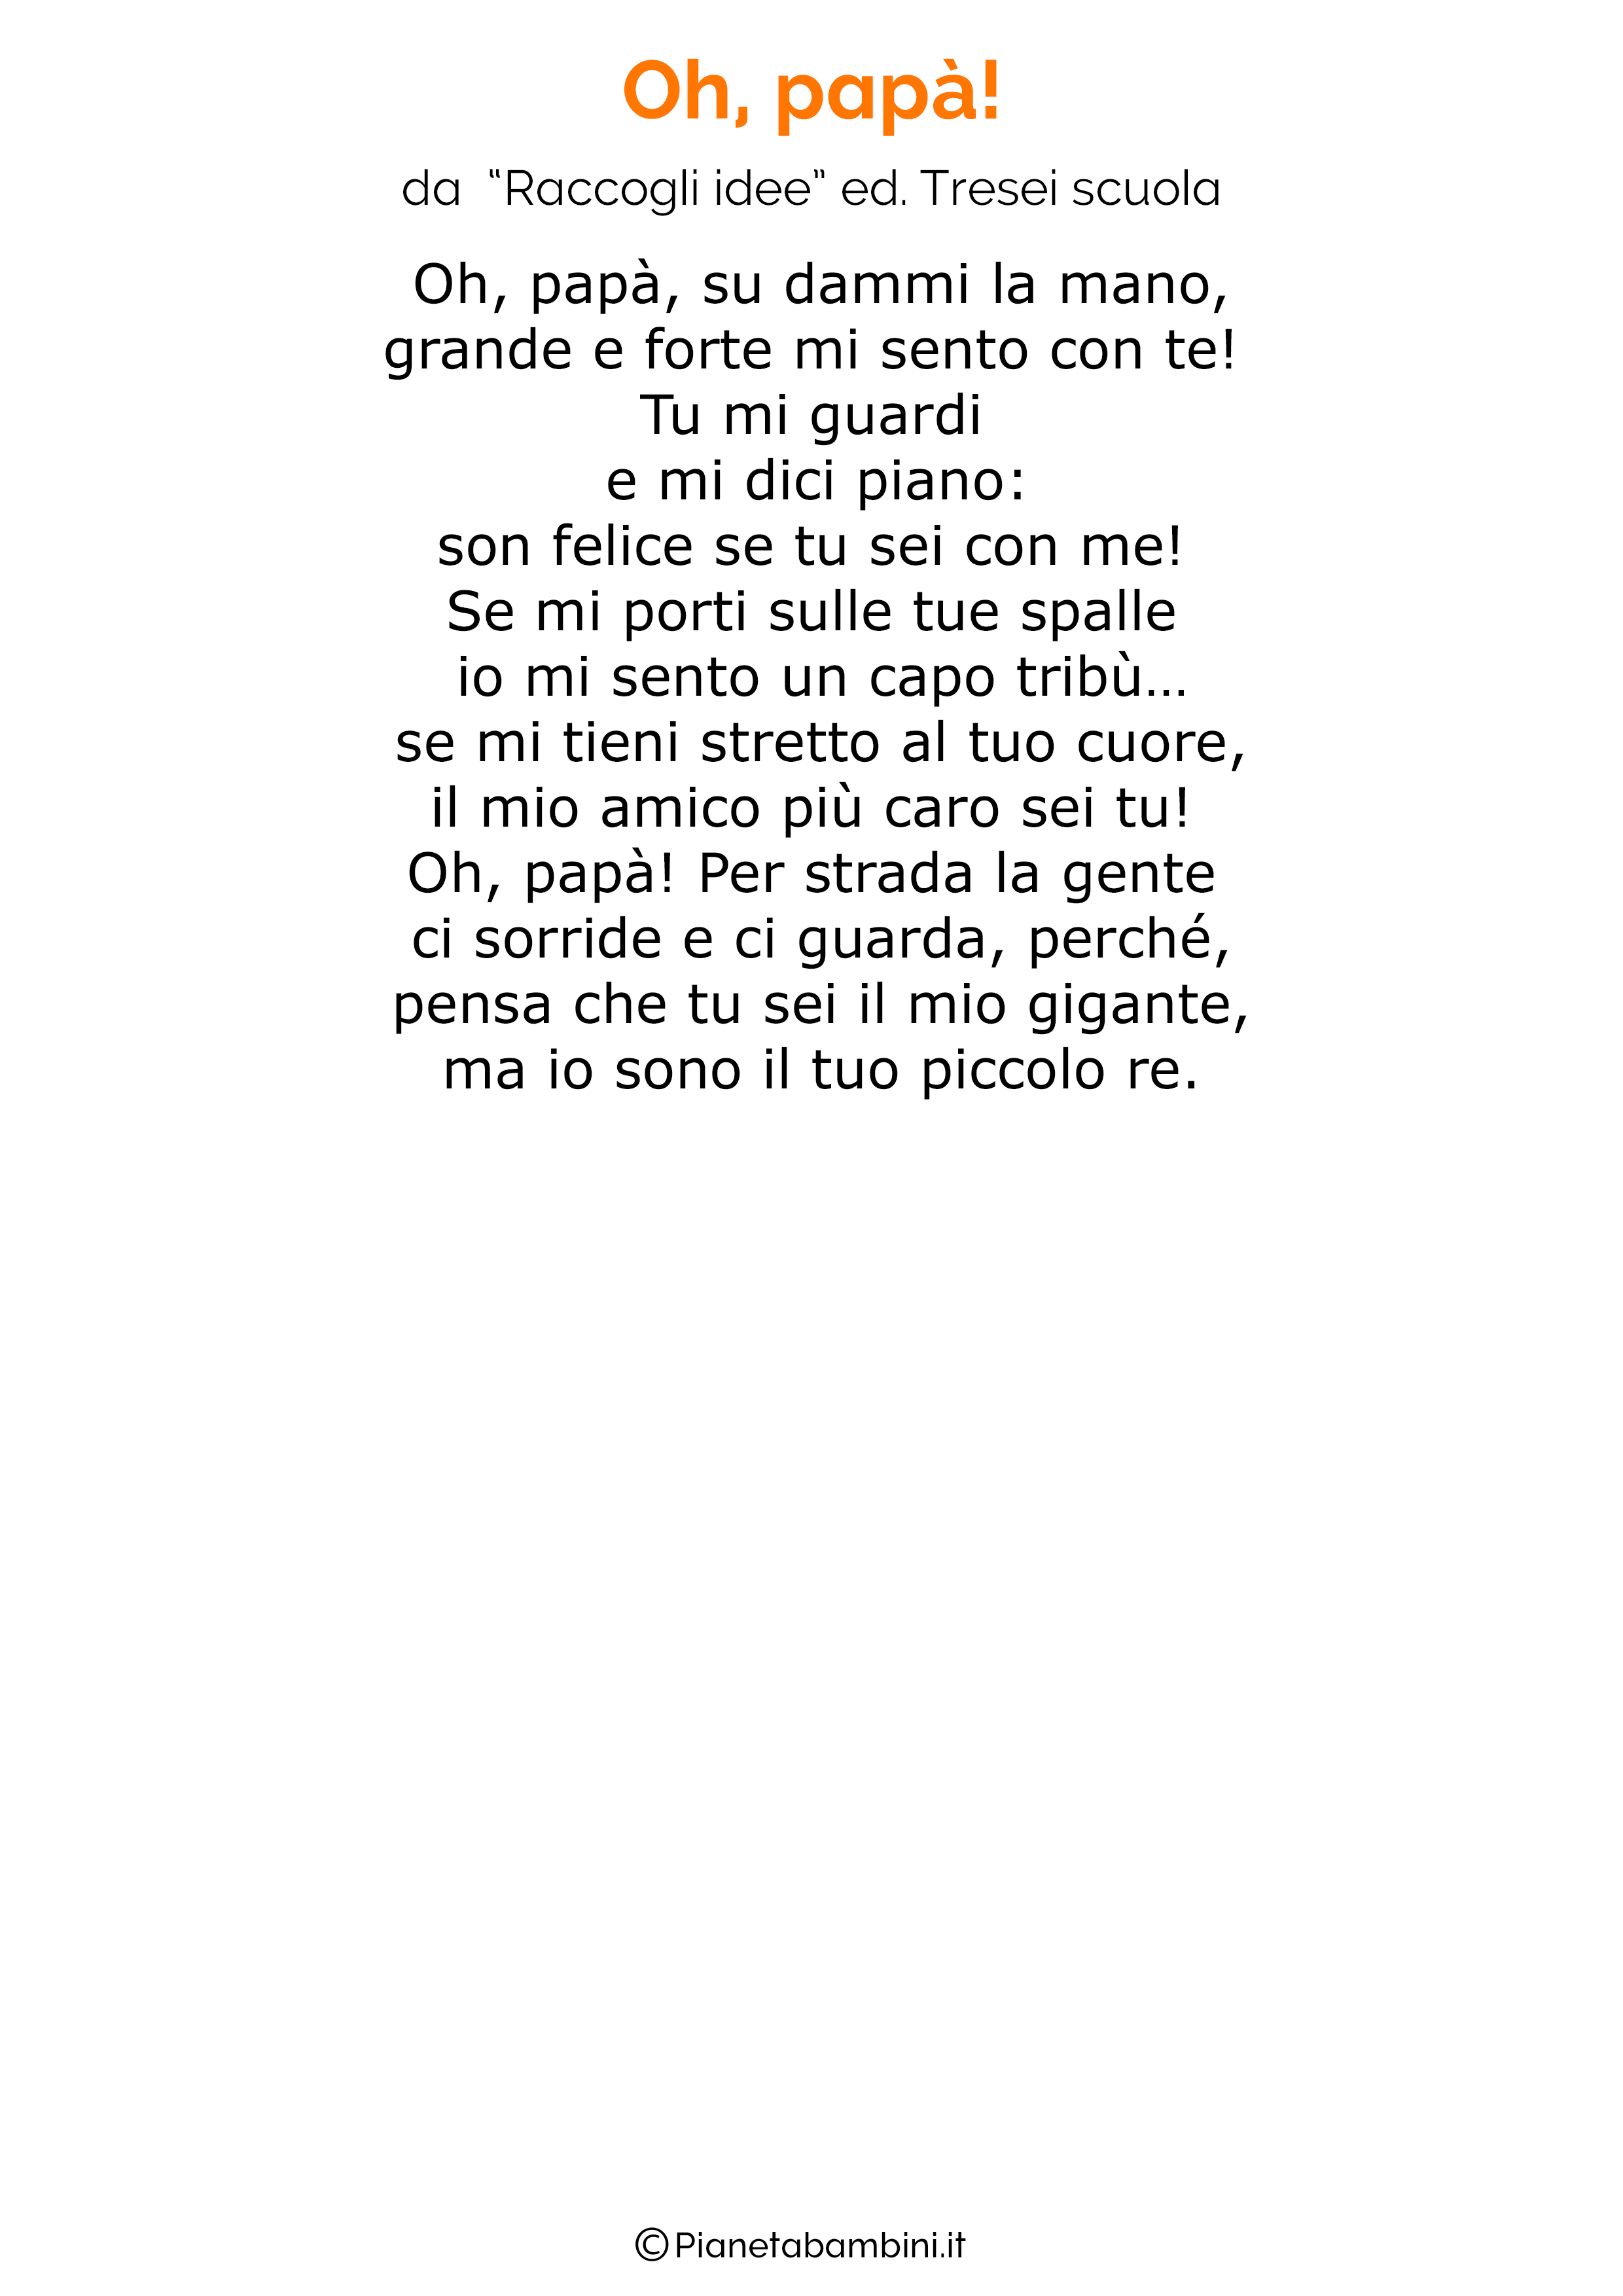 Poesia per la festa del papa per bambini 40